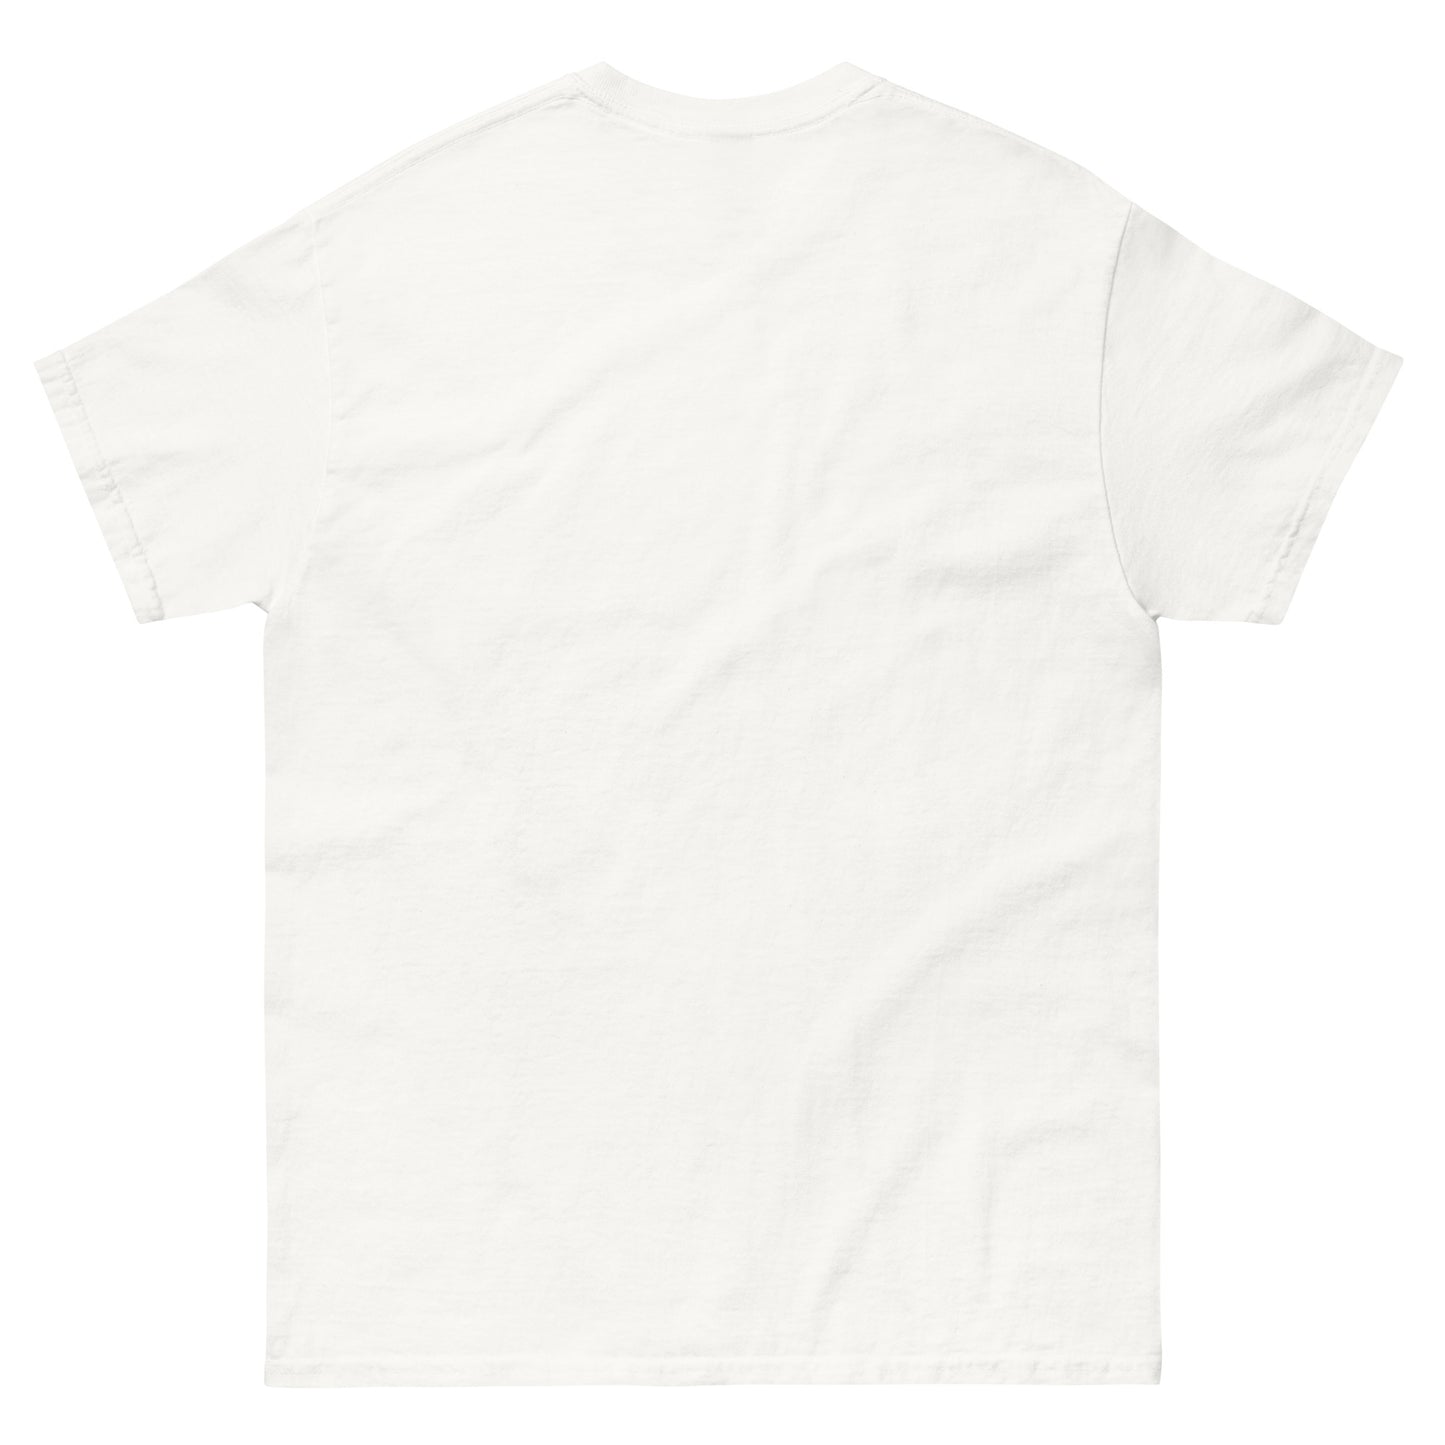 BooPatrick T-Shirt